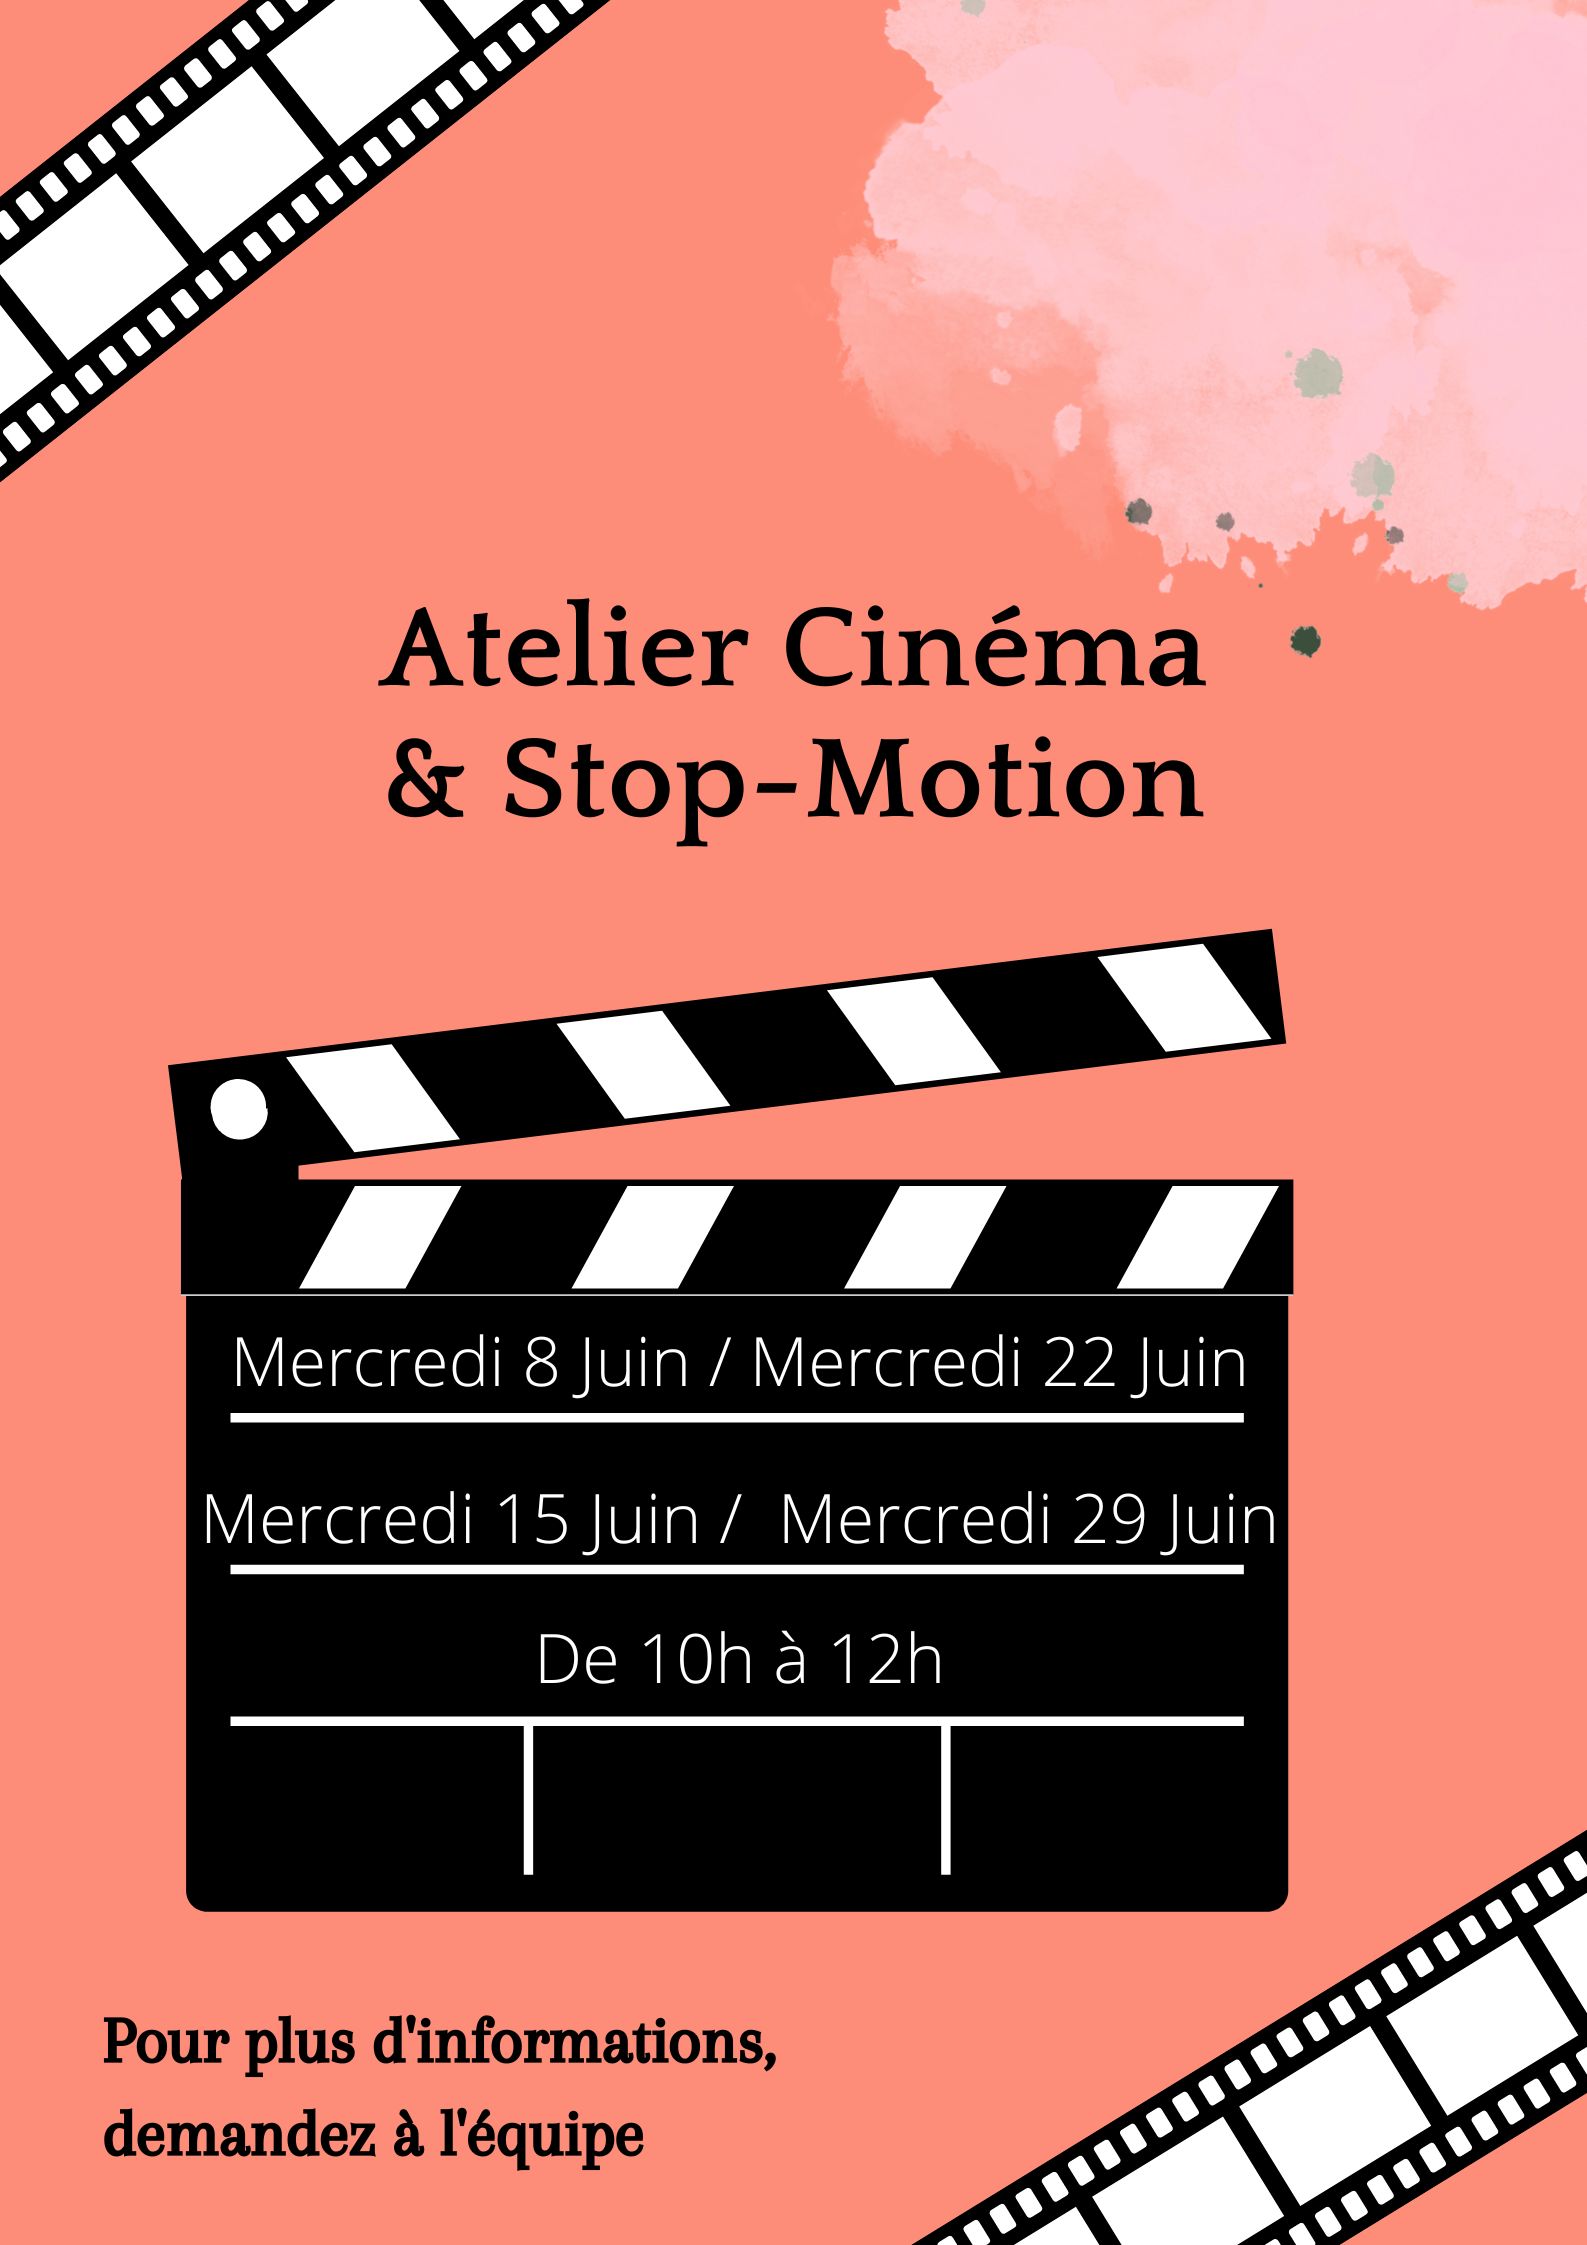 Atelier Cinéma & Stop-Motion